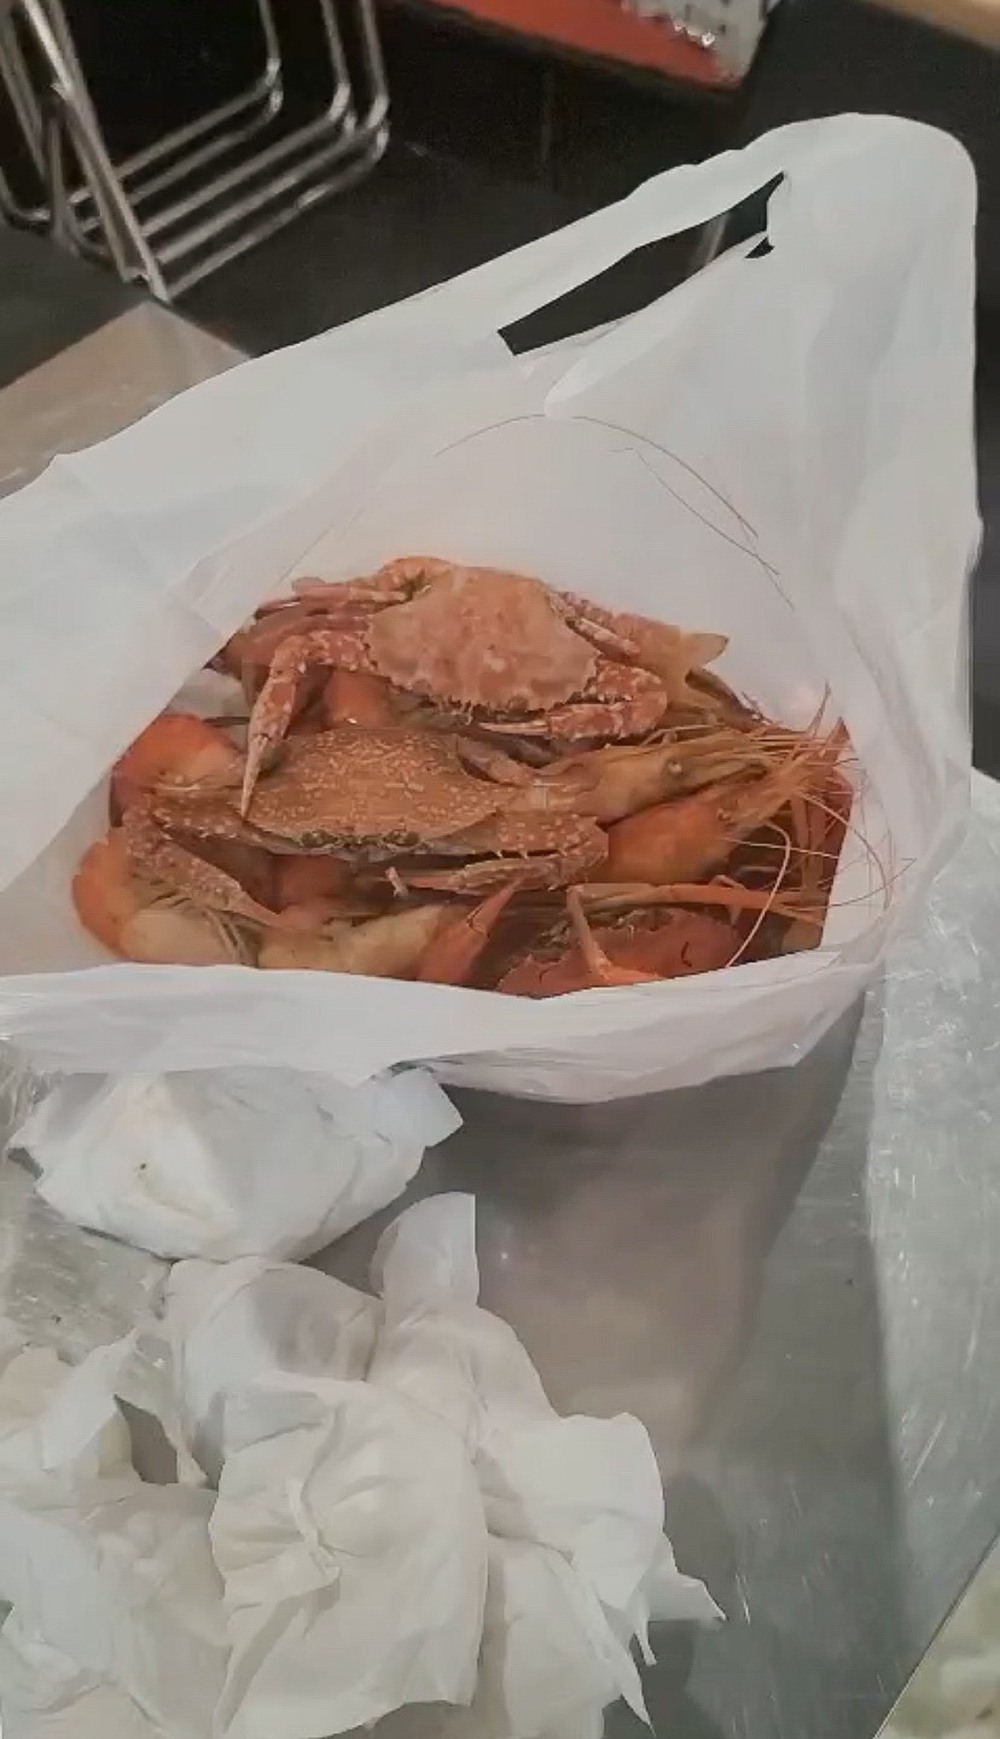 Ăn buffet hải sản Hà Nội, đôi nam nữ lén lút đút túi 4kg mang về, bị camera tố cáo - Ảnh 2.